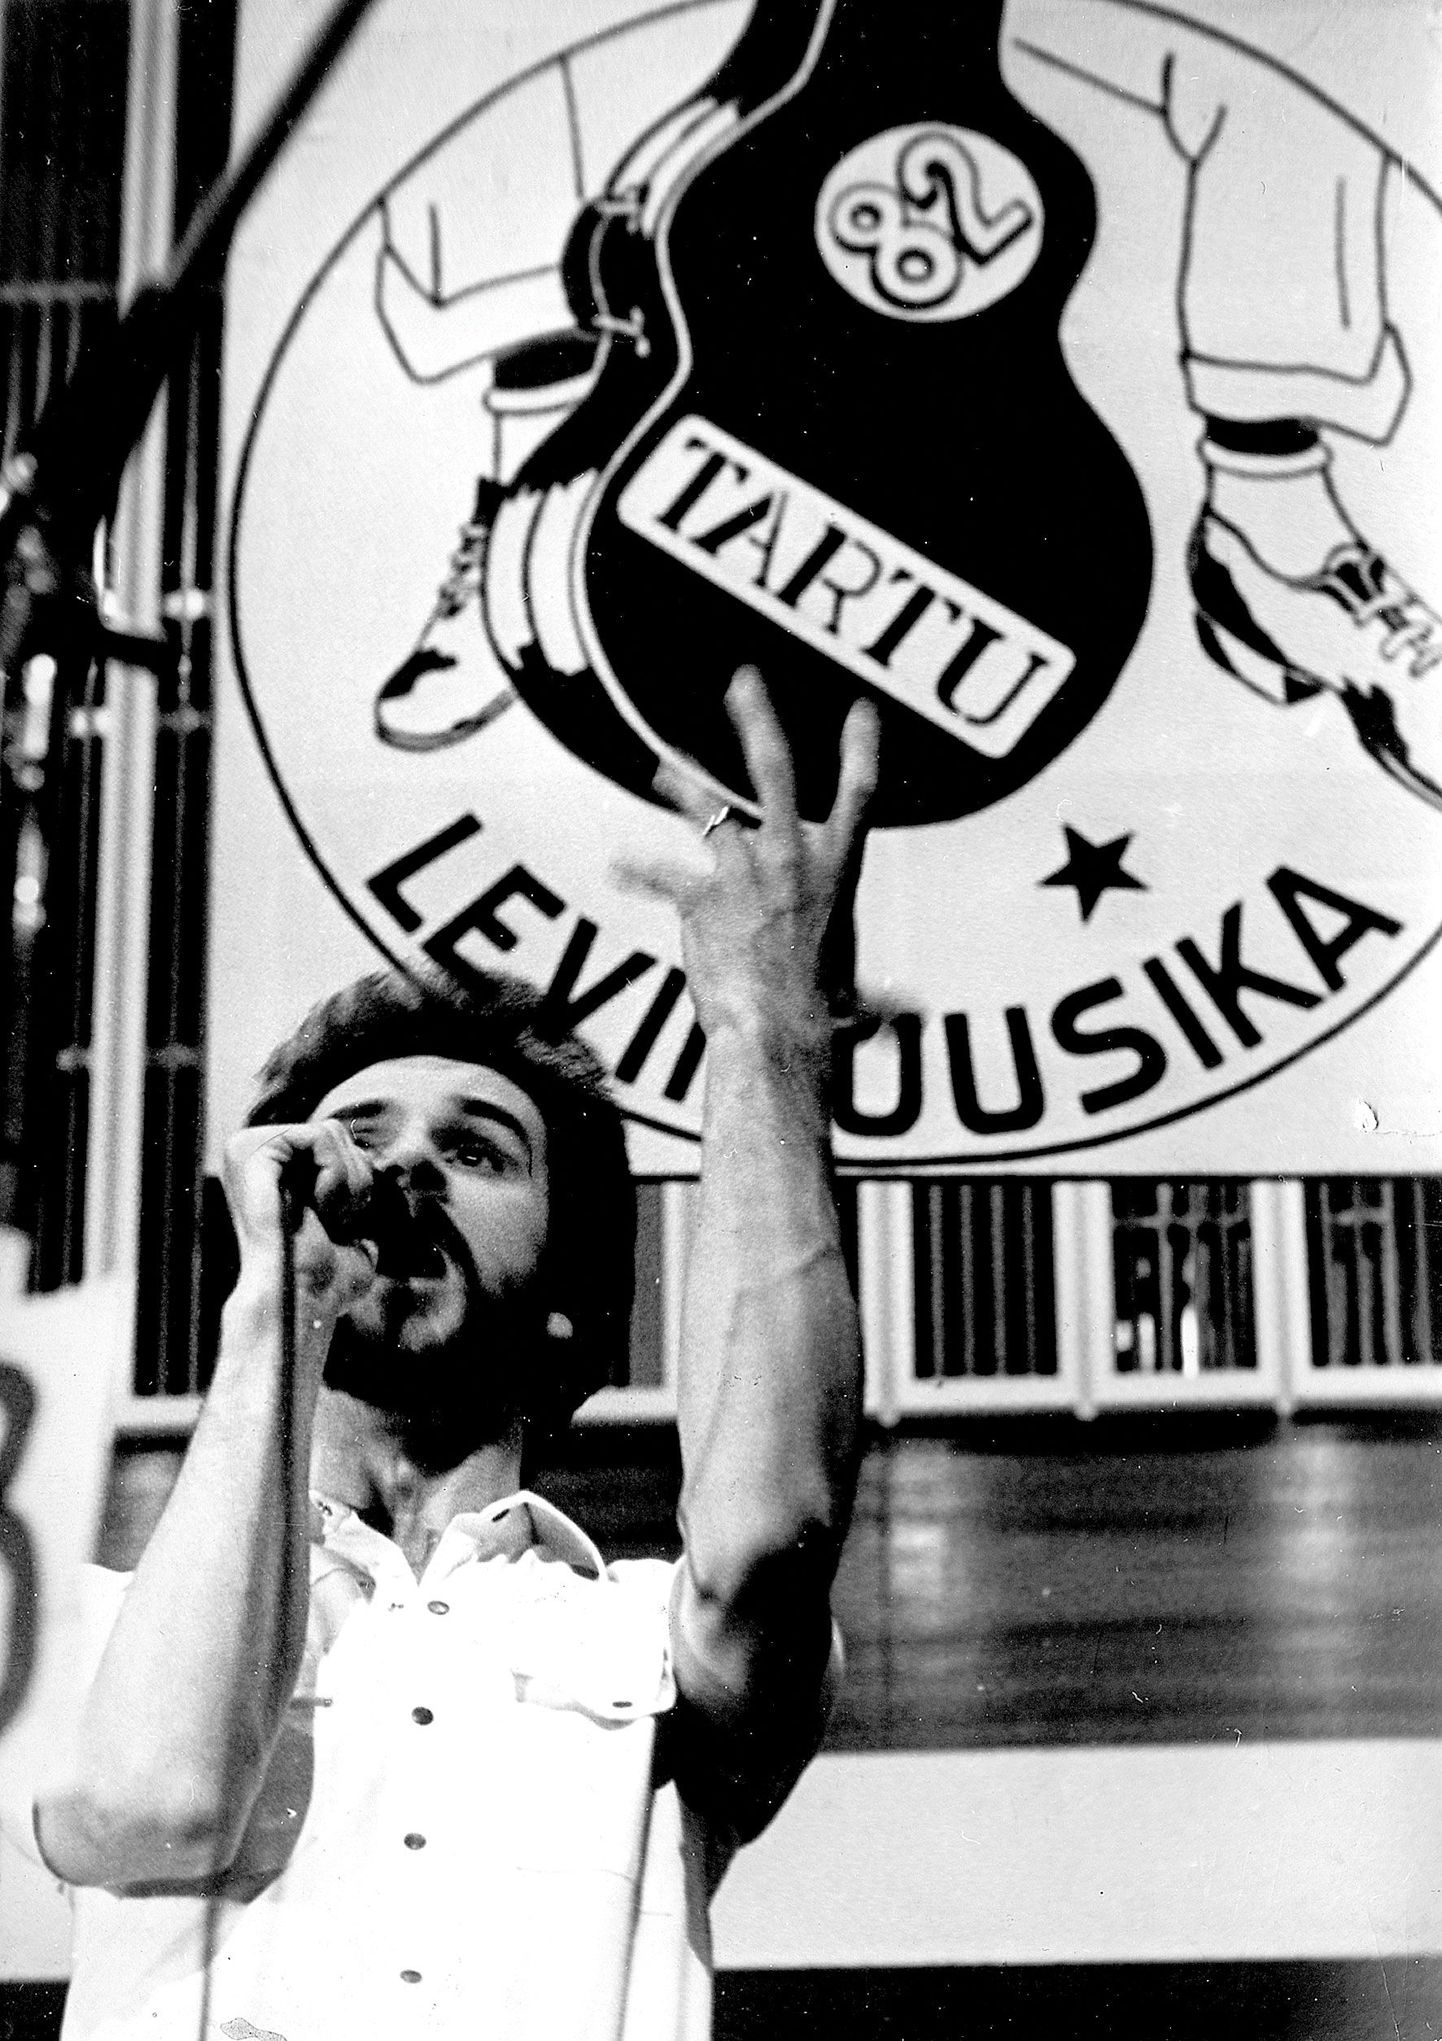 Aprilli lõpp aastal 1982. Tartu levimuusikapäevade publik valib Urmas Alenderi parimaks lauljaks.